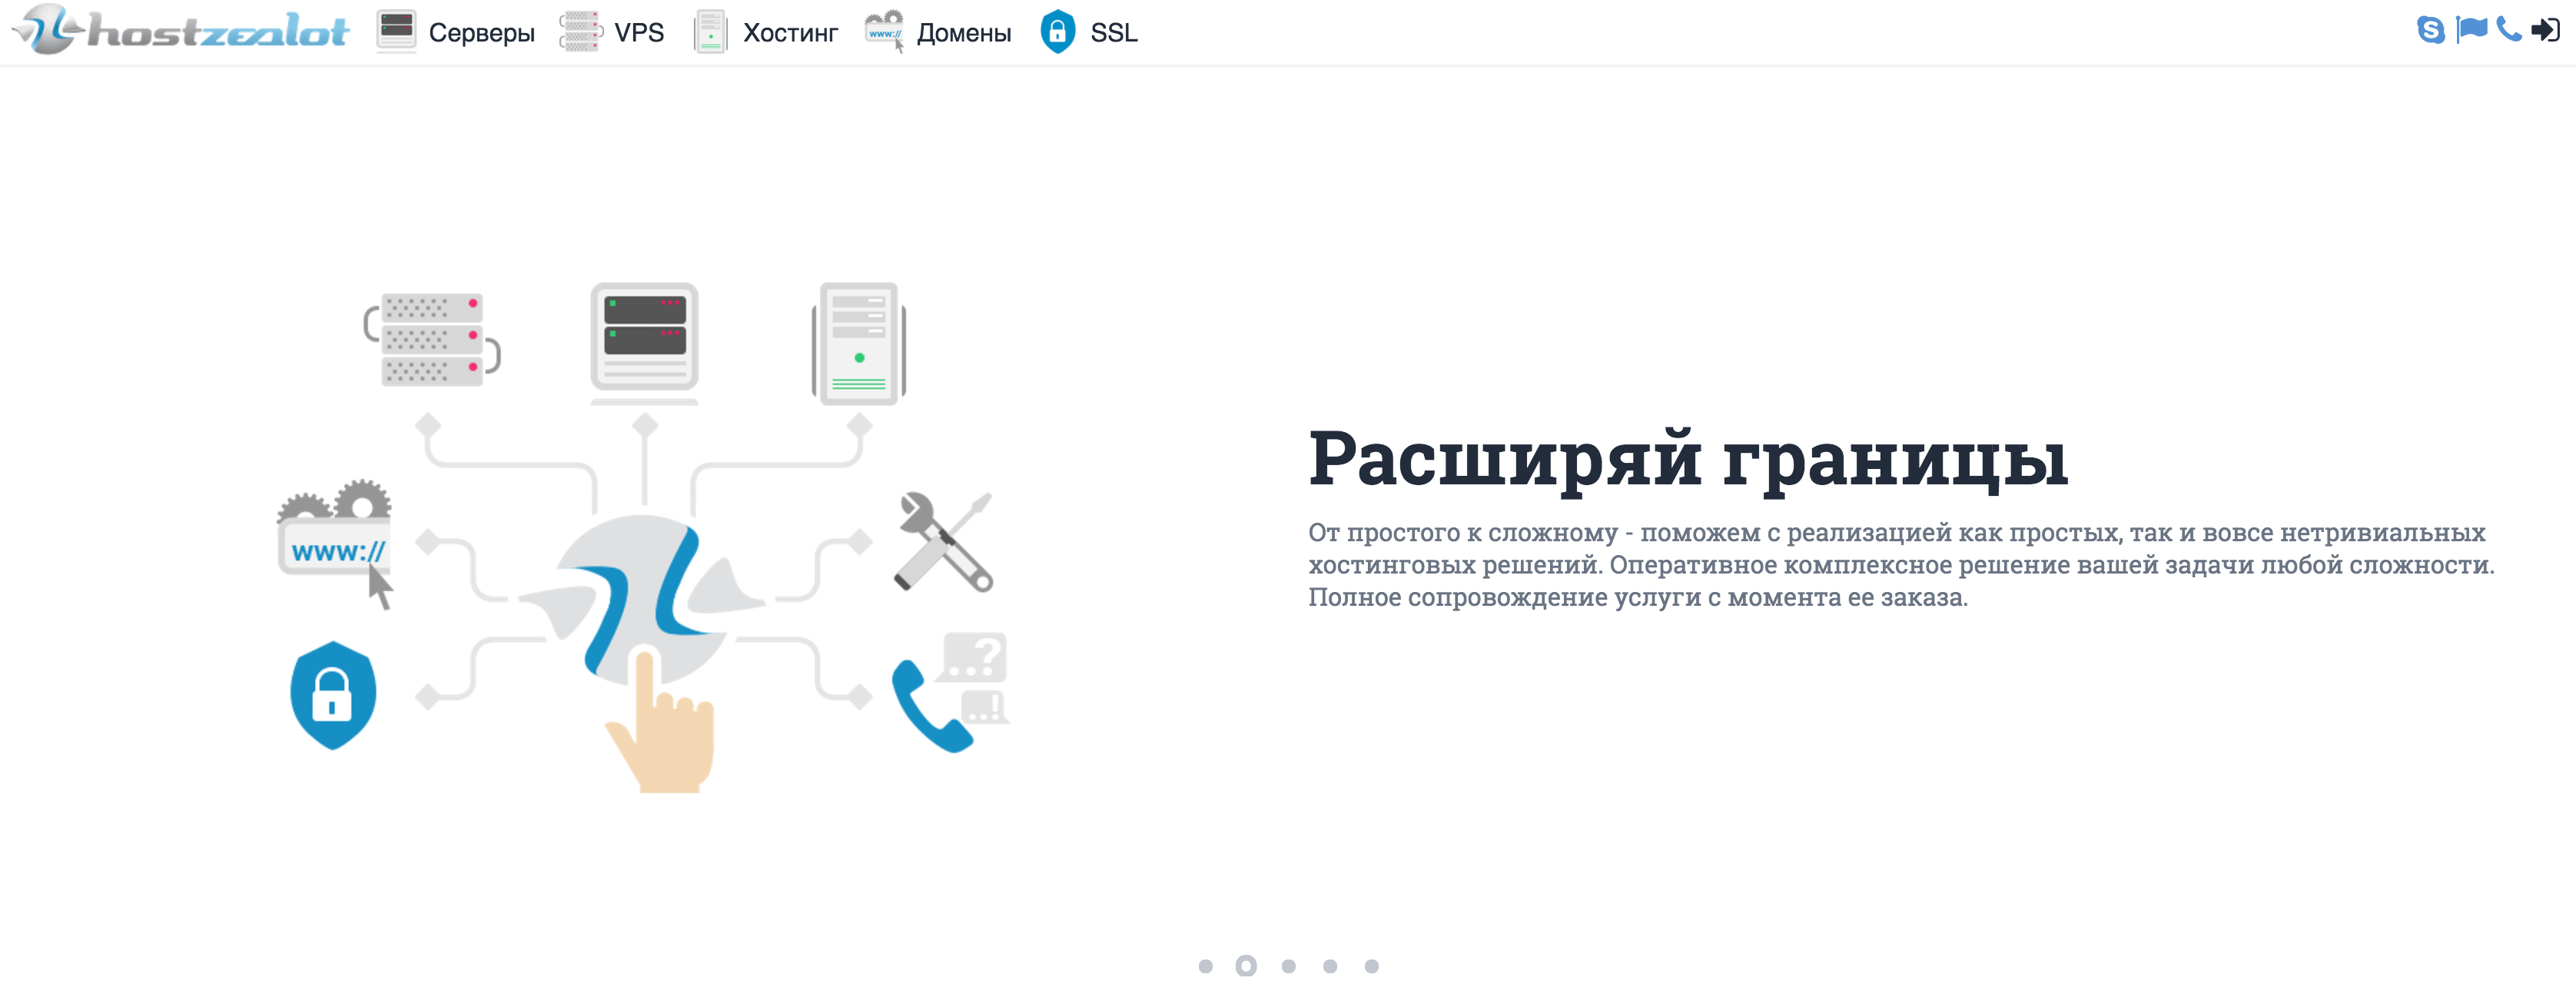 Запуск нового сайта hostzealot.ru